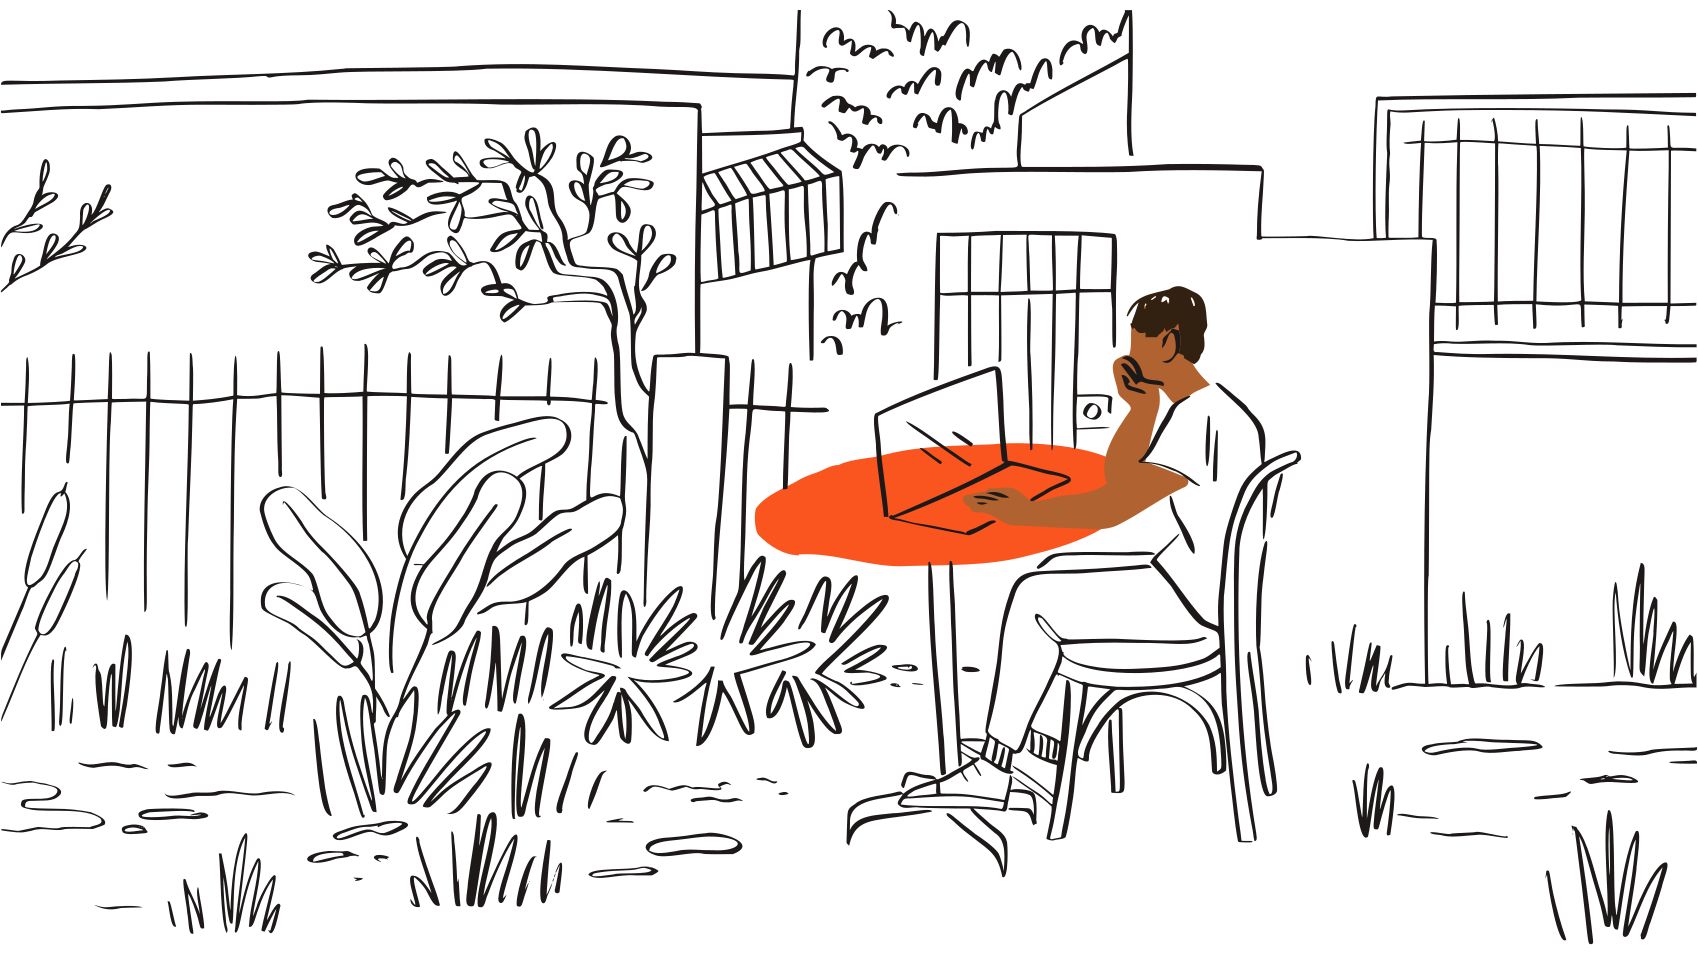 ภาพประกอบแสดงคนนั่งอยู่ข้างนอกที่โต๊ะสีส้มและมองแล็ปท็อป